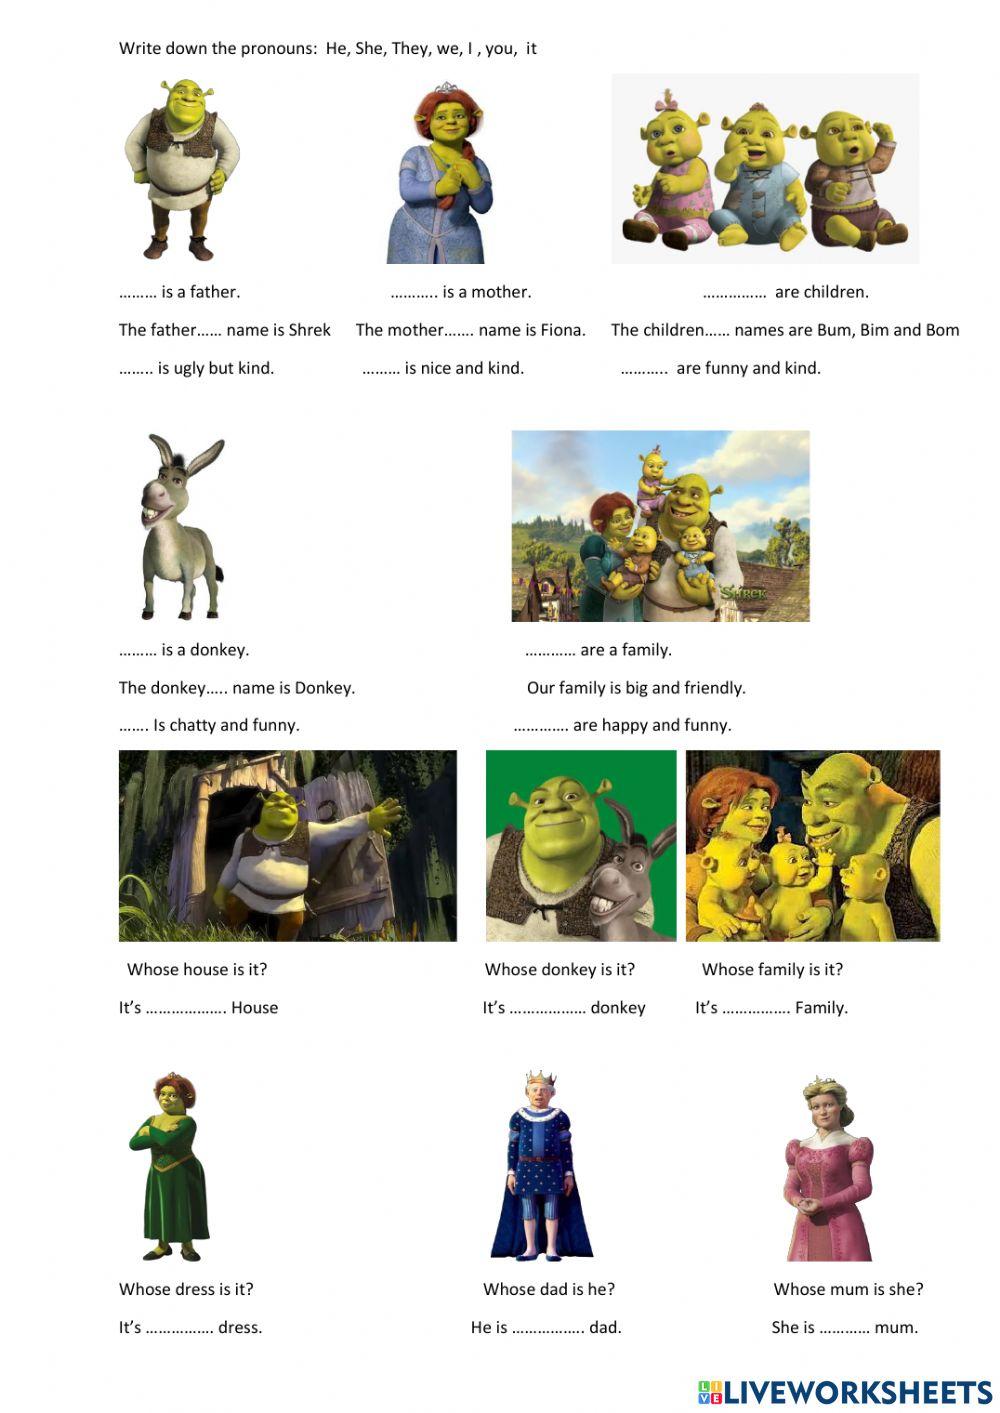 Shrek's family